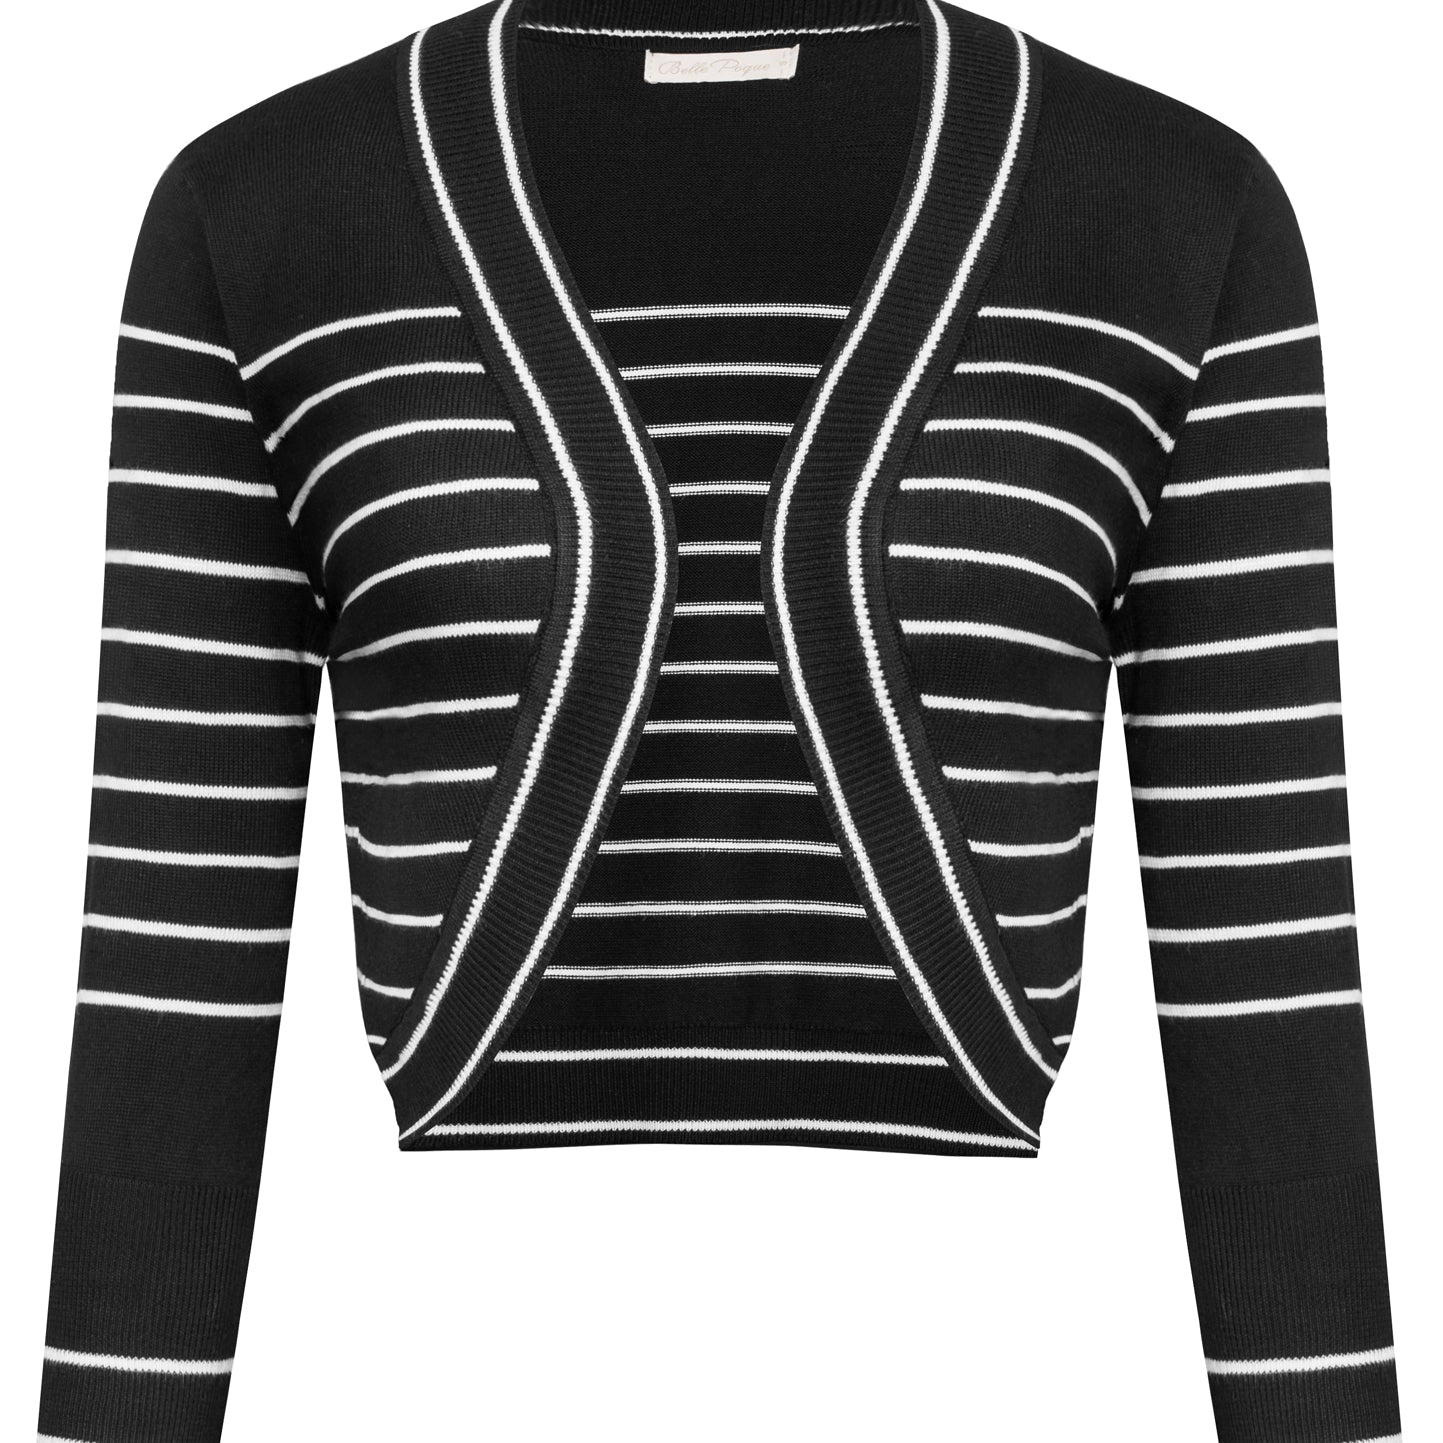 3/4 Sleeve Bolero Shrug Open Front Knit Cropped Cardigan Sweater